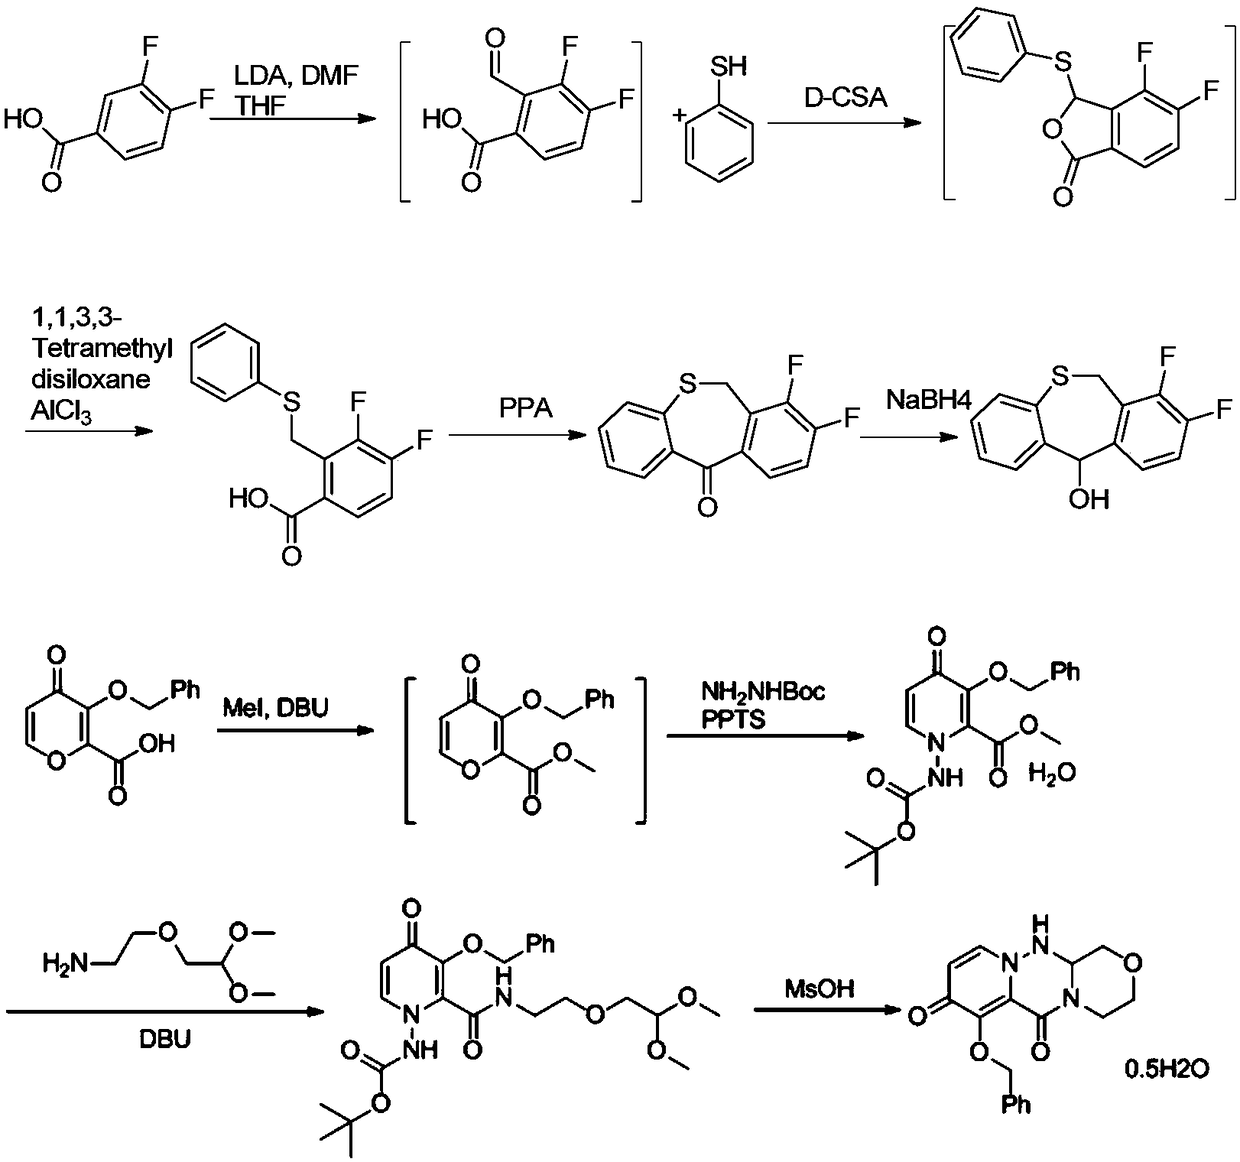 Method for synthesizing novel anti-influenza drug